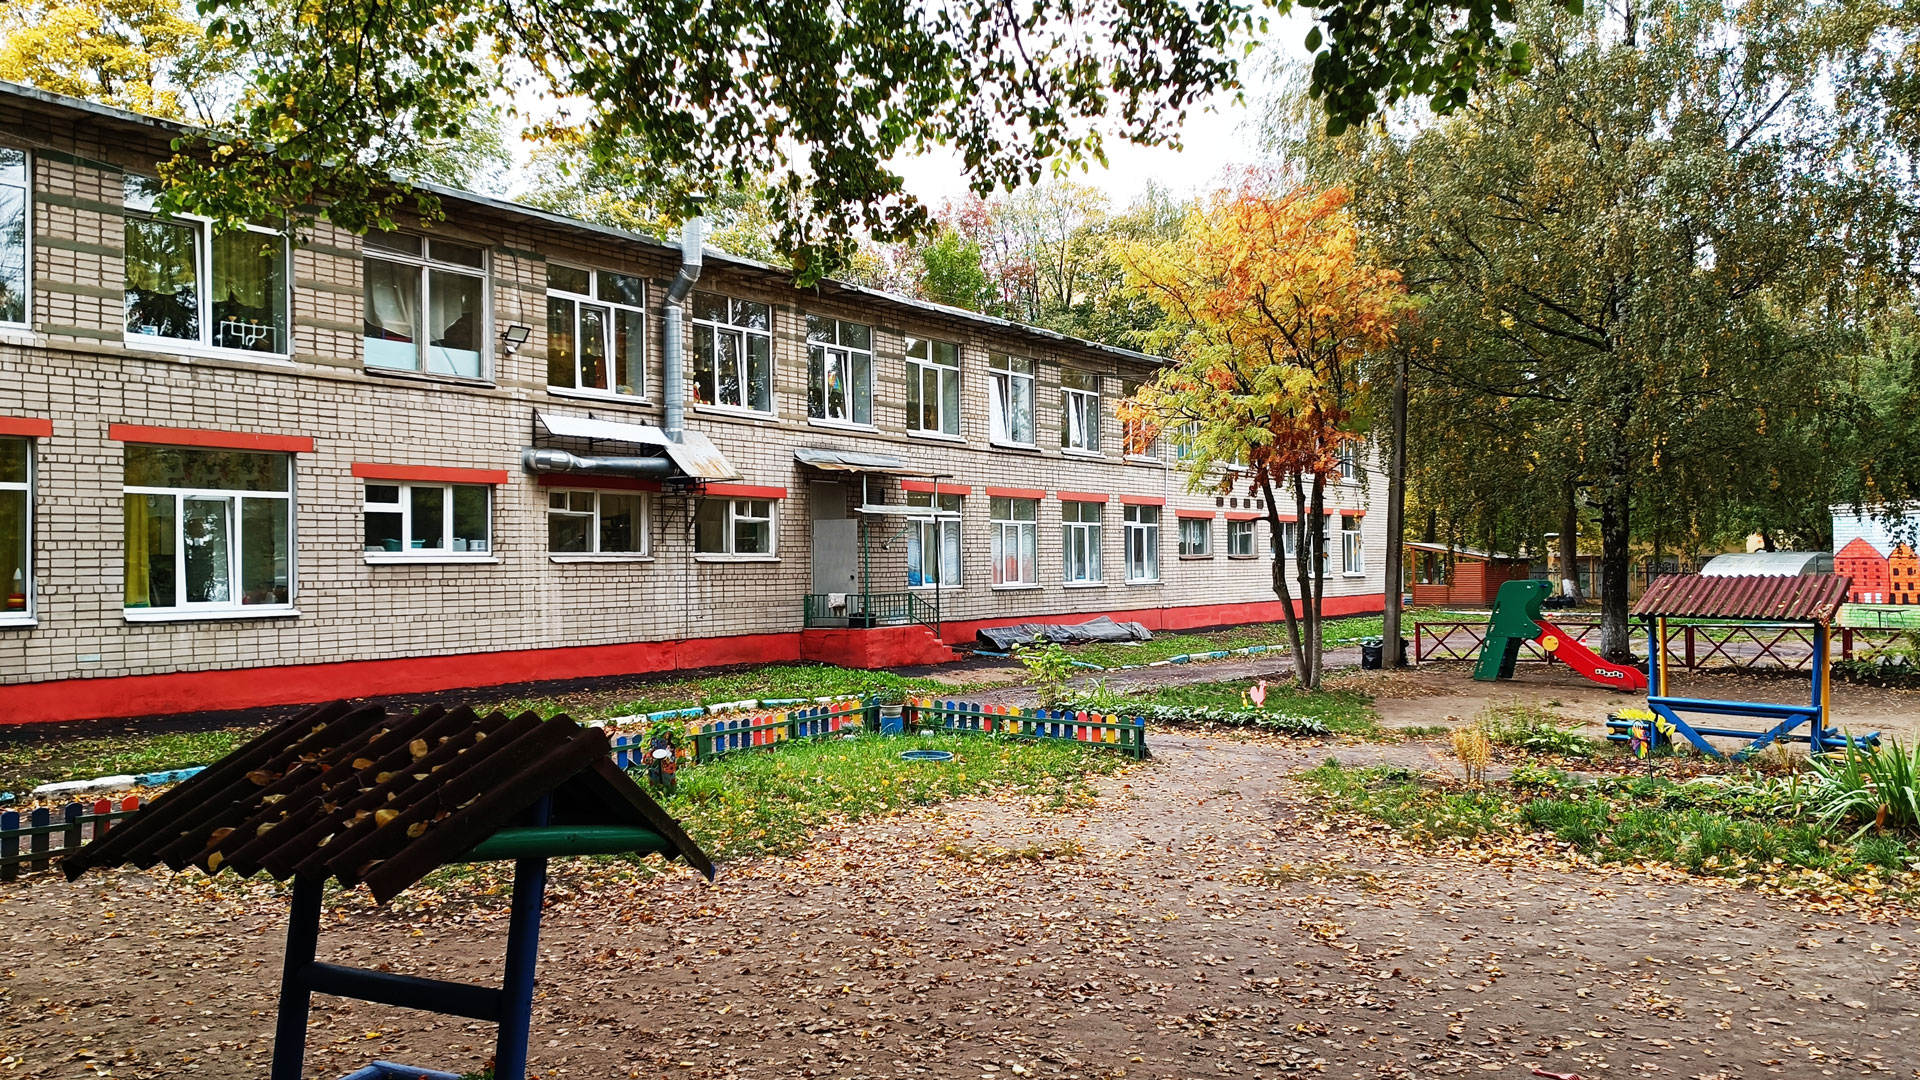 Детский сад 40 Ярославль: общий вид здания.